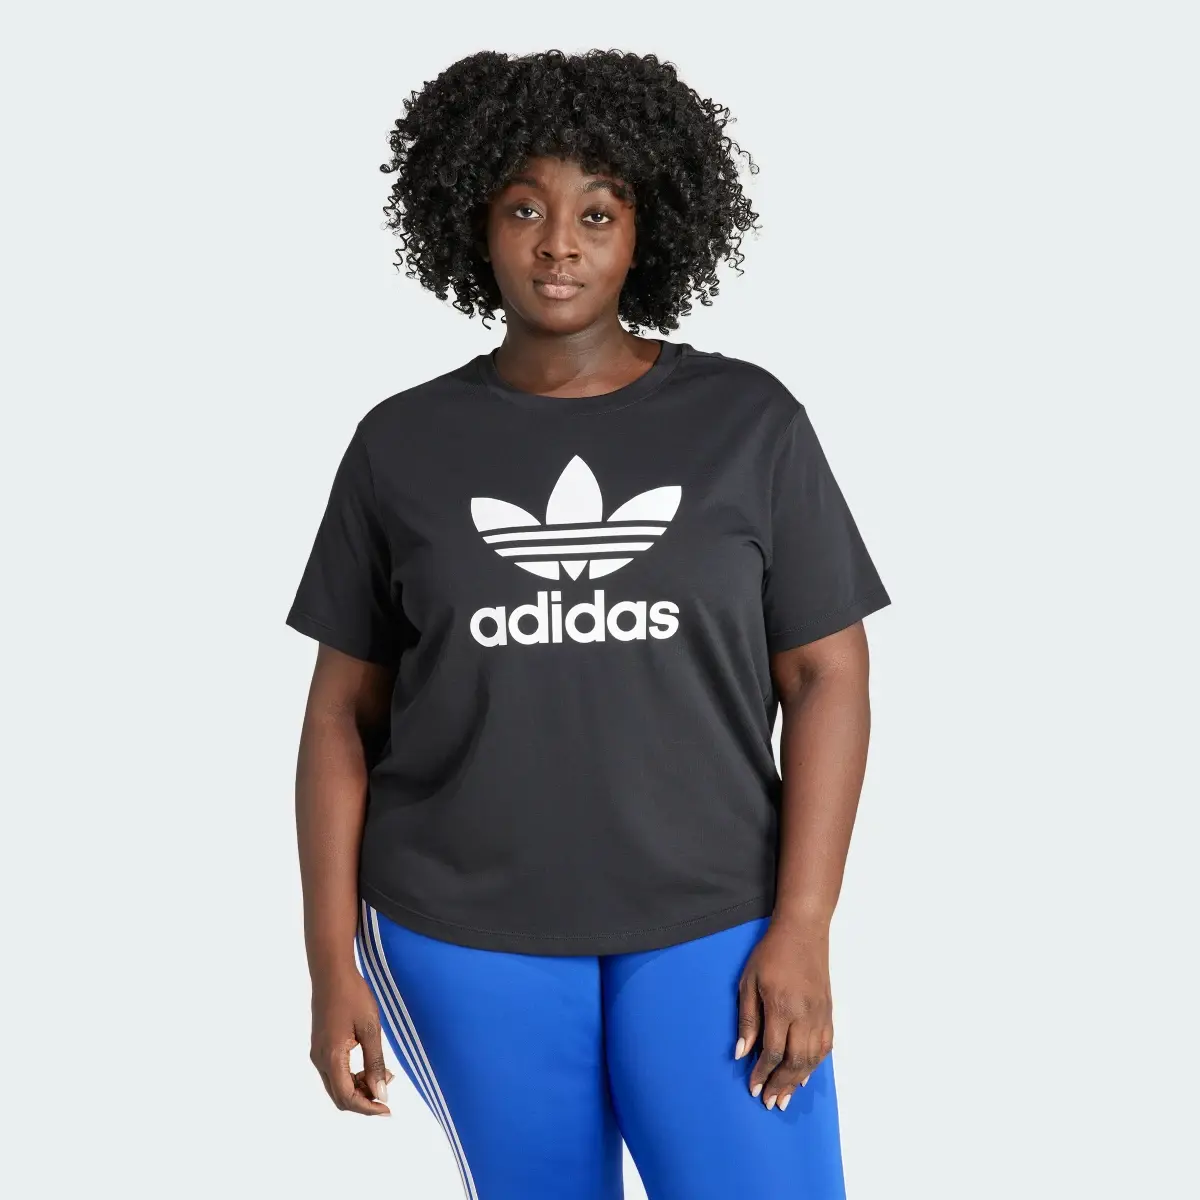 Adidas T-shirt Quadrada Trefoil Adicolor (Plus Size). 2